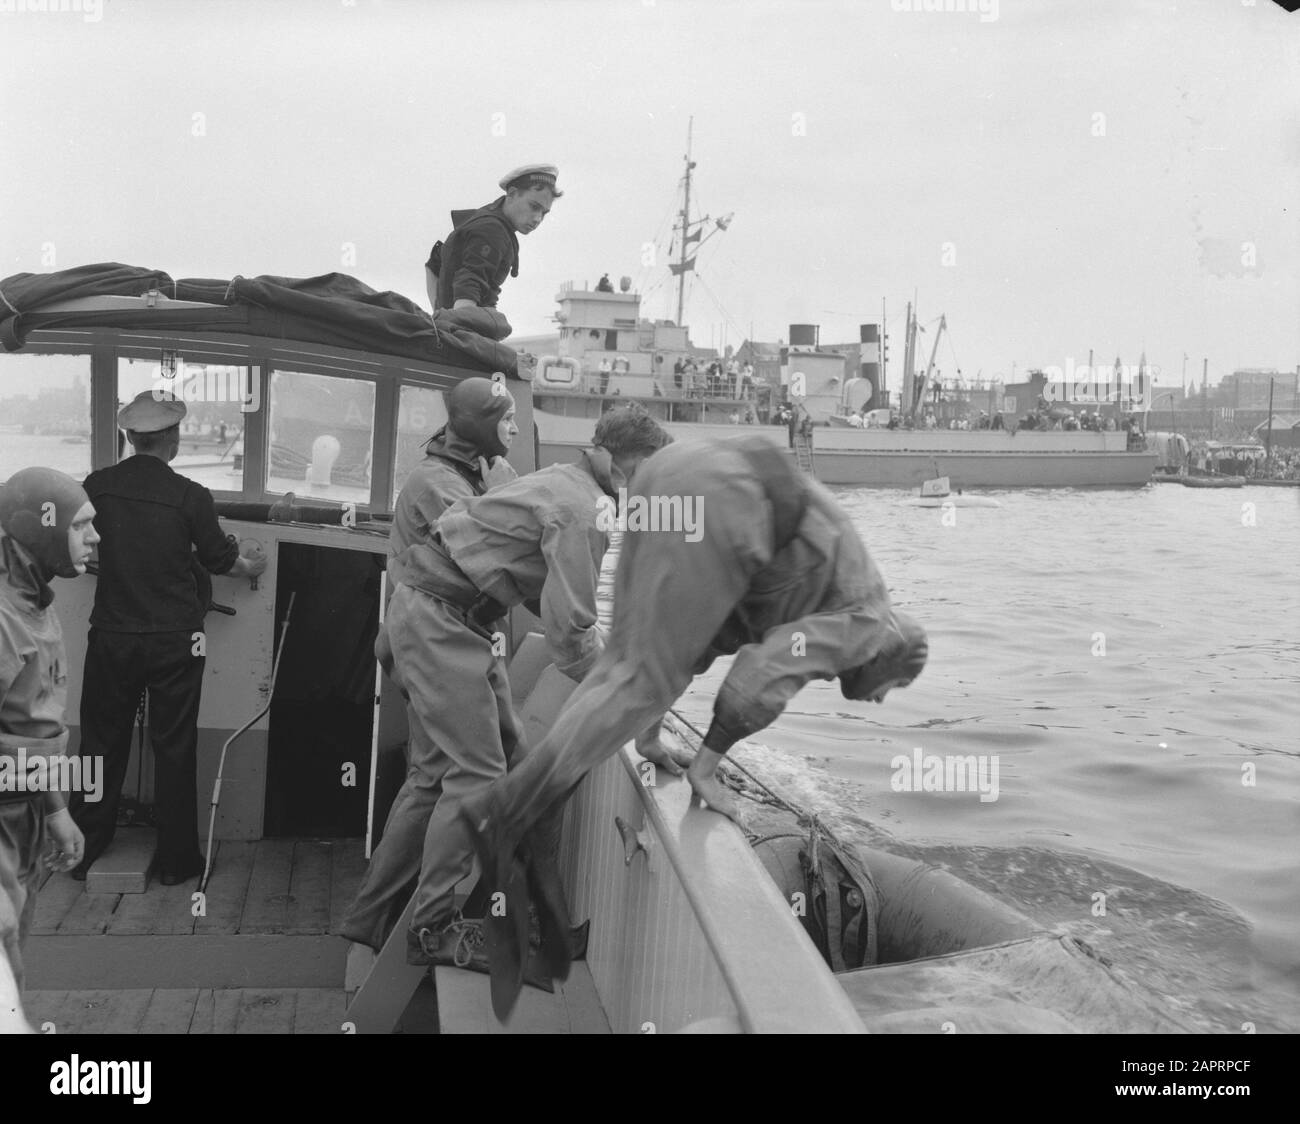 Démonstration de plongée Amsterdam pendant la flotte Schouw, frogvorsman prend une plongée Date: 6 septembre 1958 lieu: Amsterdam, Noord-Holland mots clés: Divers, marine, leetschouwen Banque D'Images